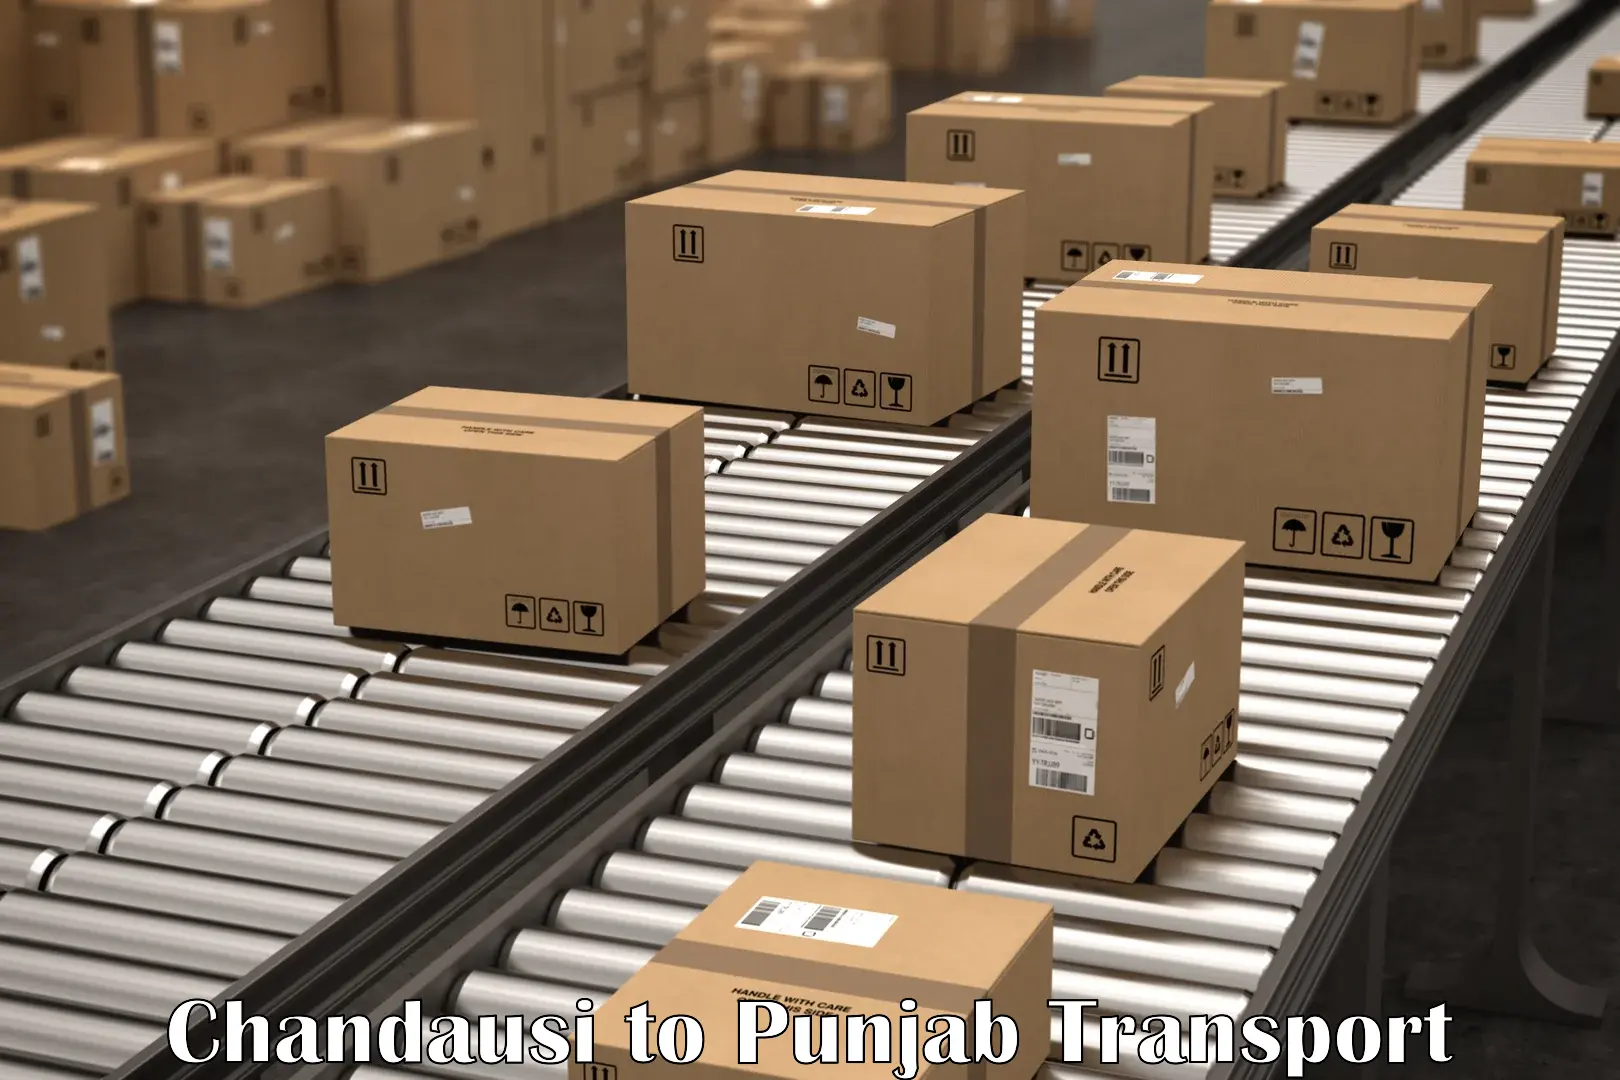 Vehicle transport services Chandausi to Punjab